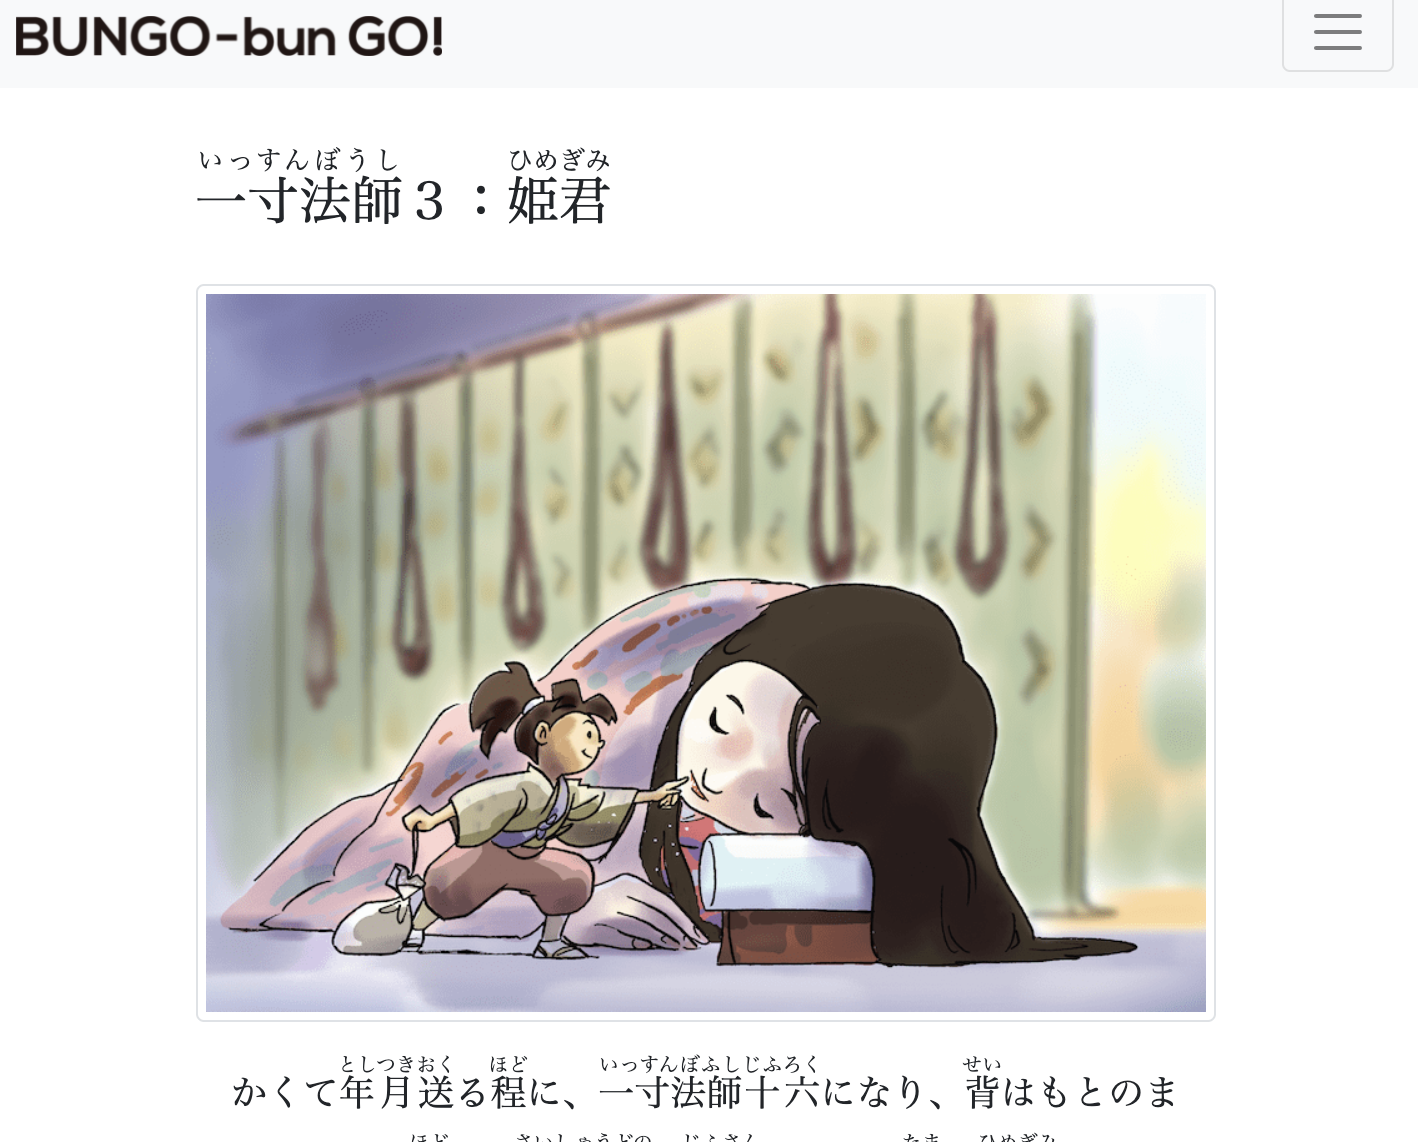 “BUNGO-bun GO!” へようこそ！